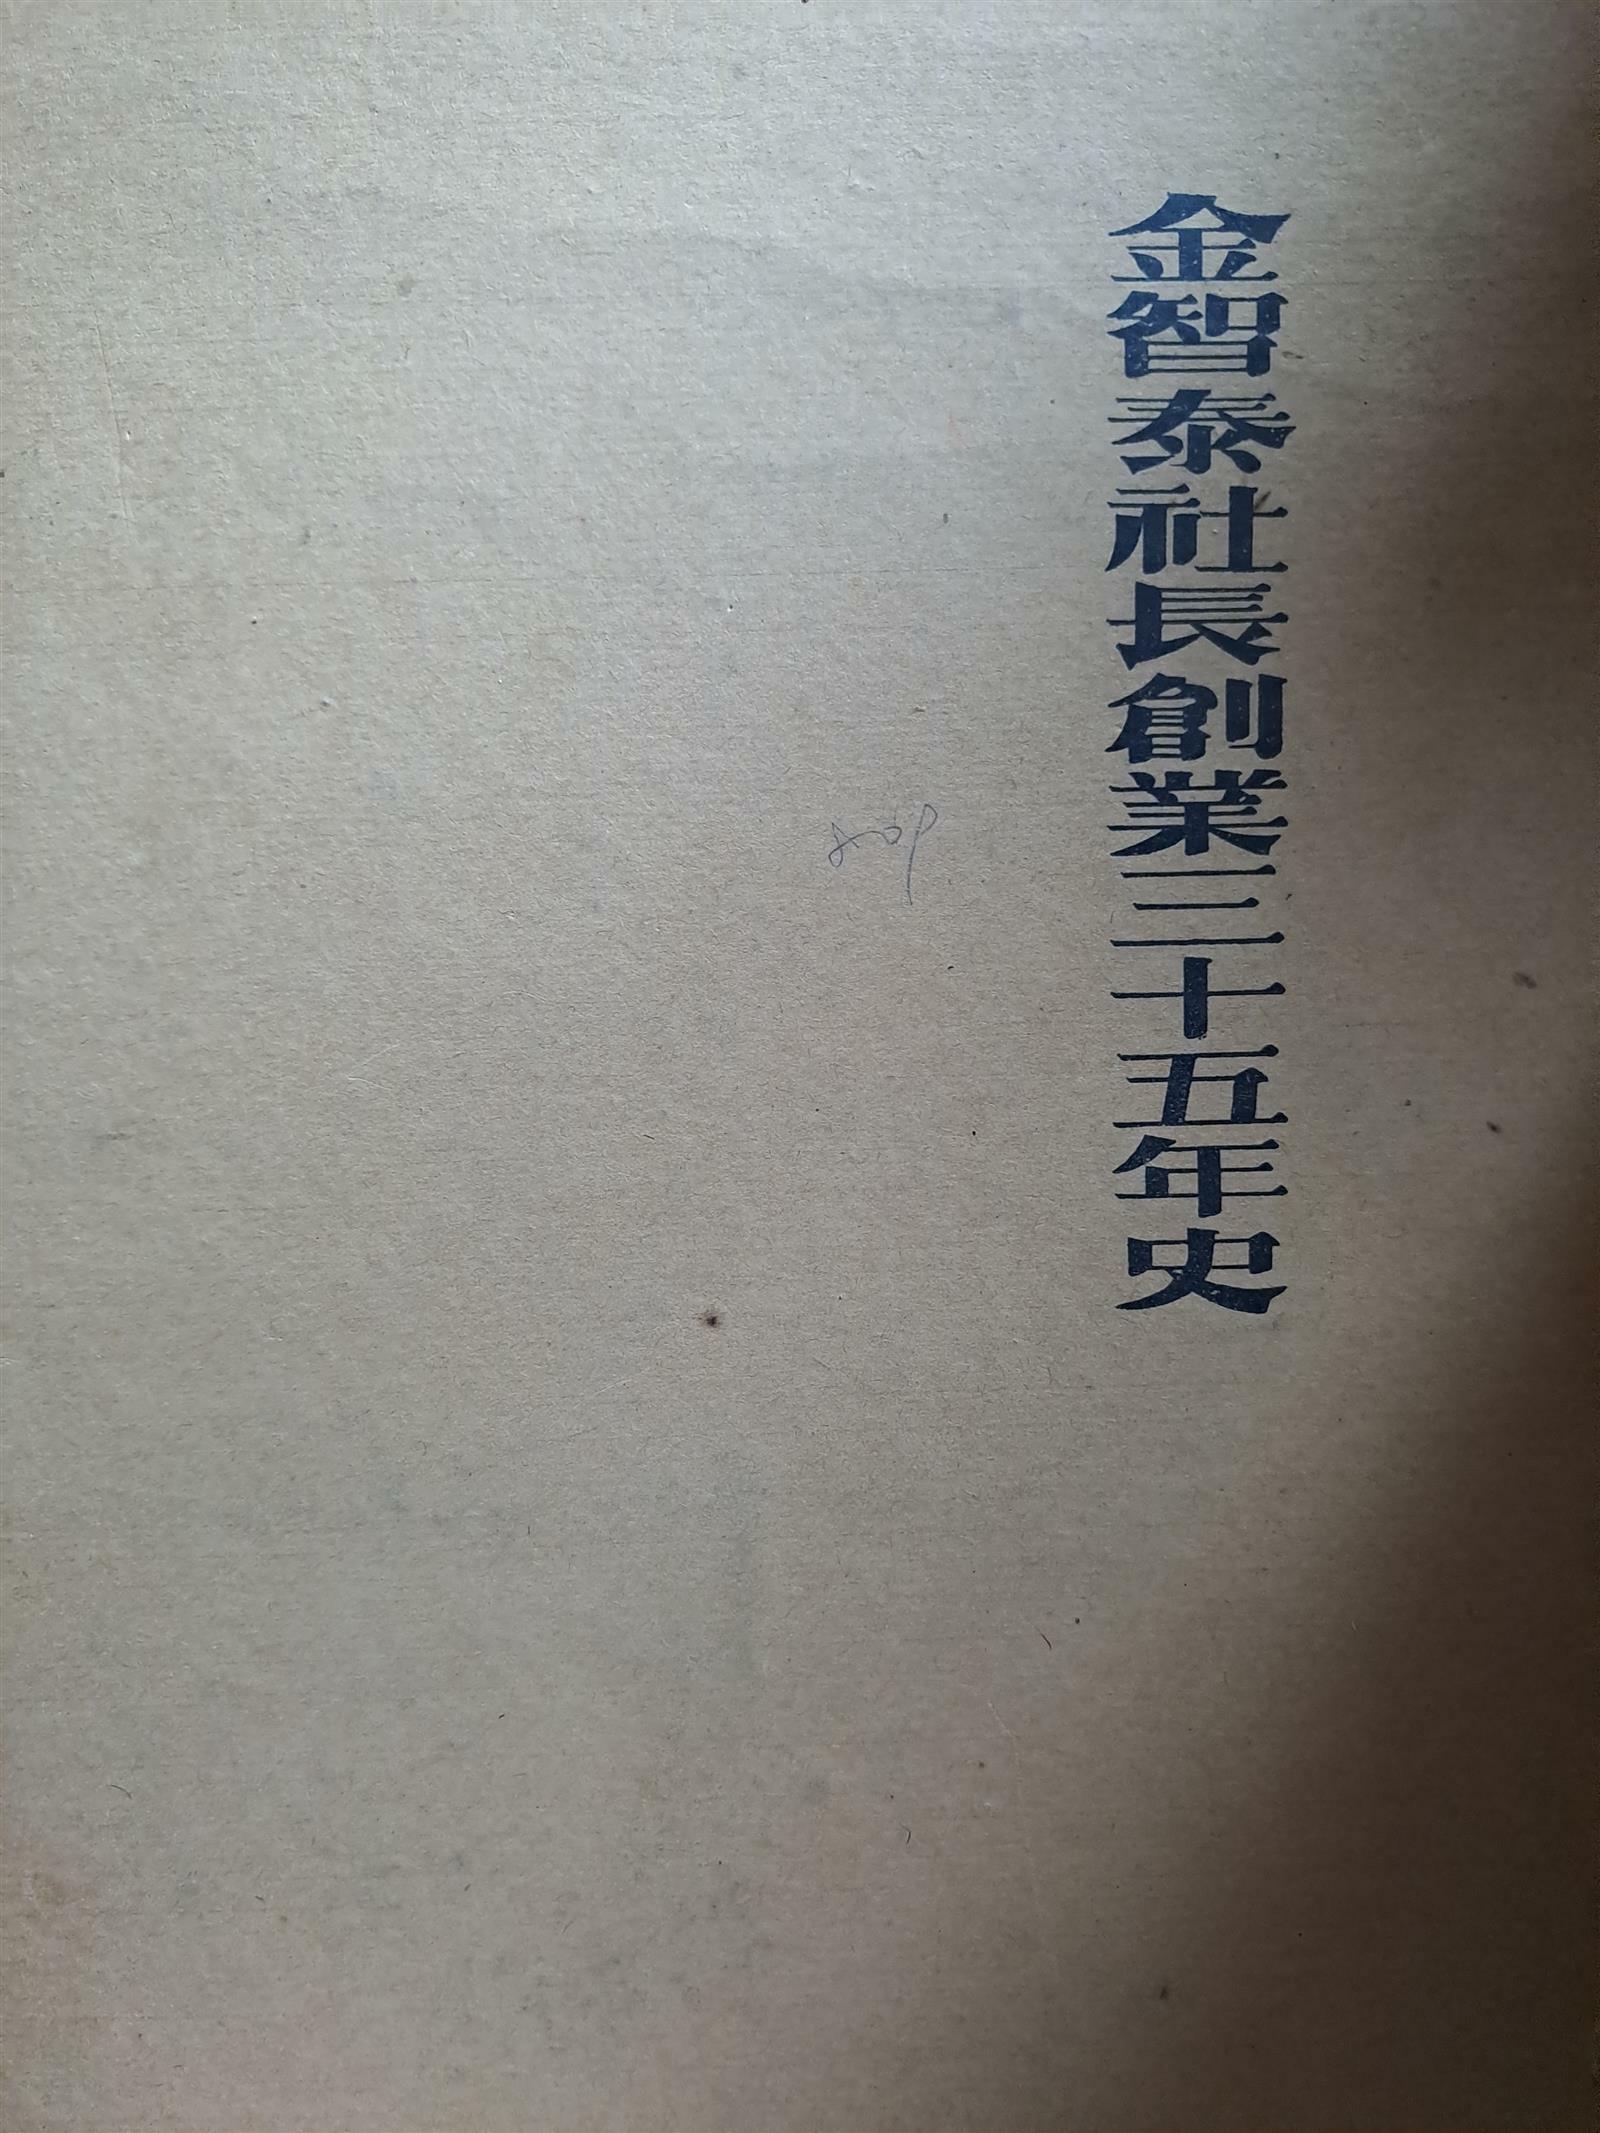 [중고] 한국生絲株式會社 -김지태사장창업35년사/1968.6.14초판본